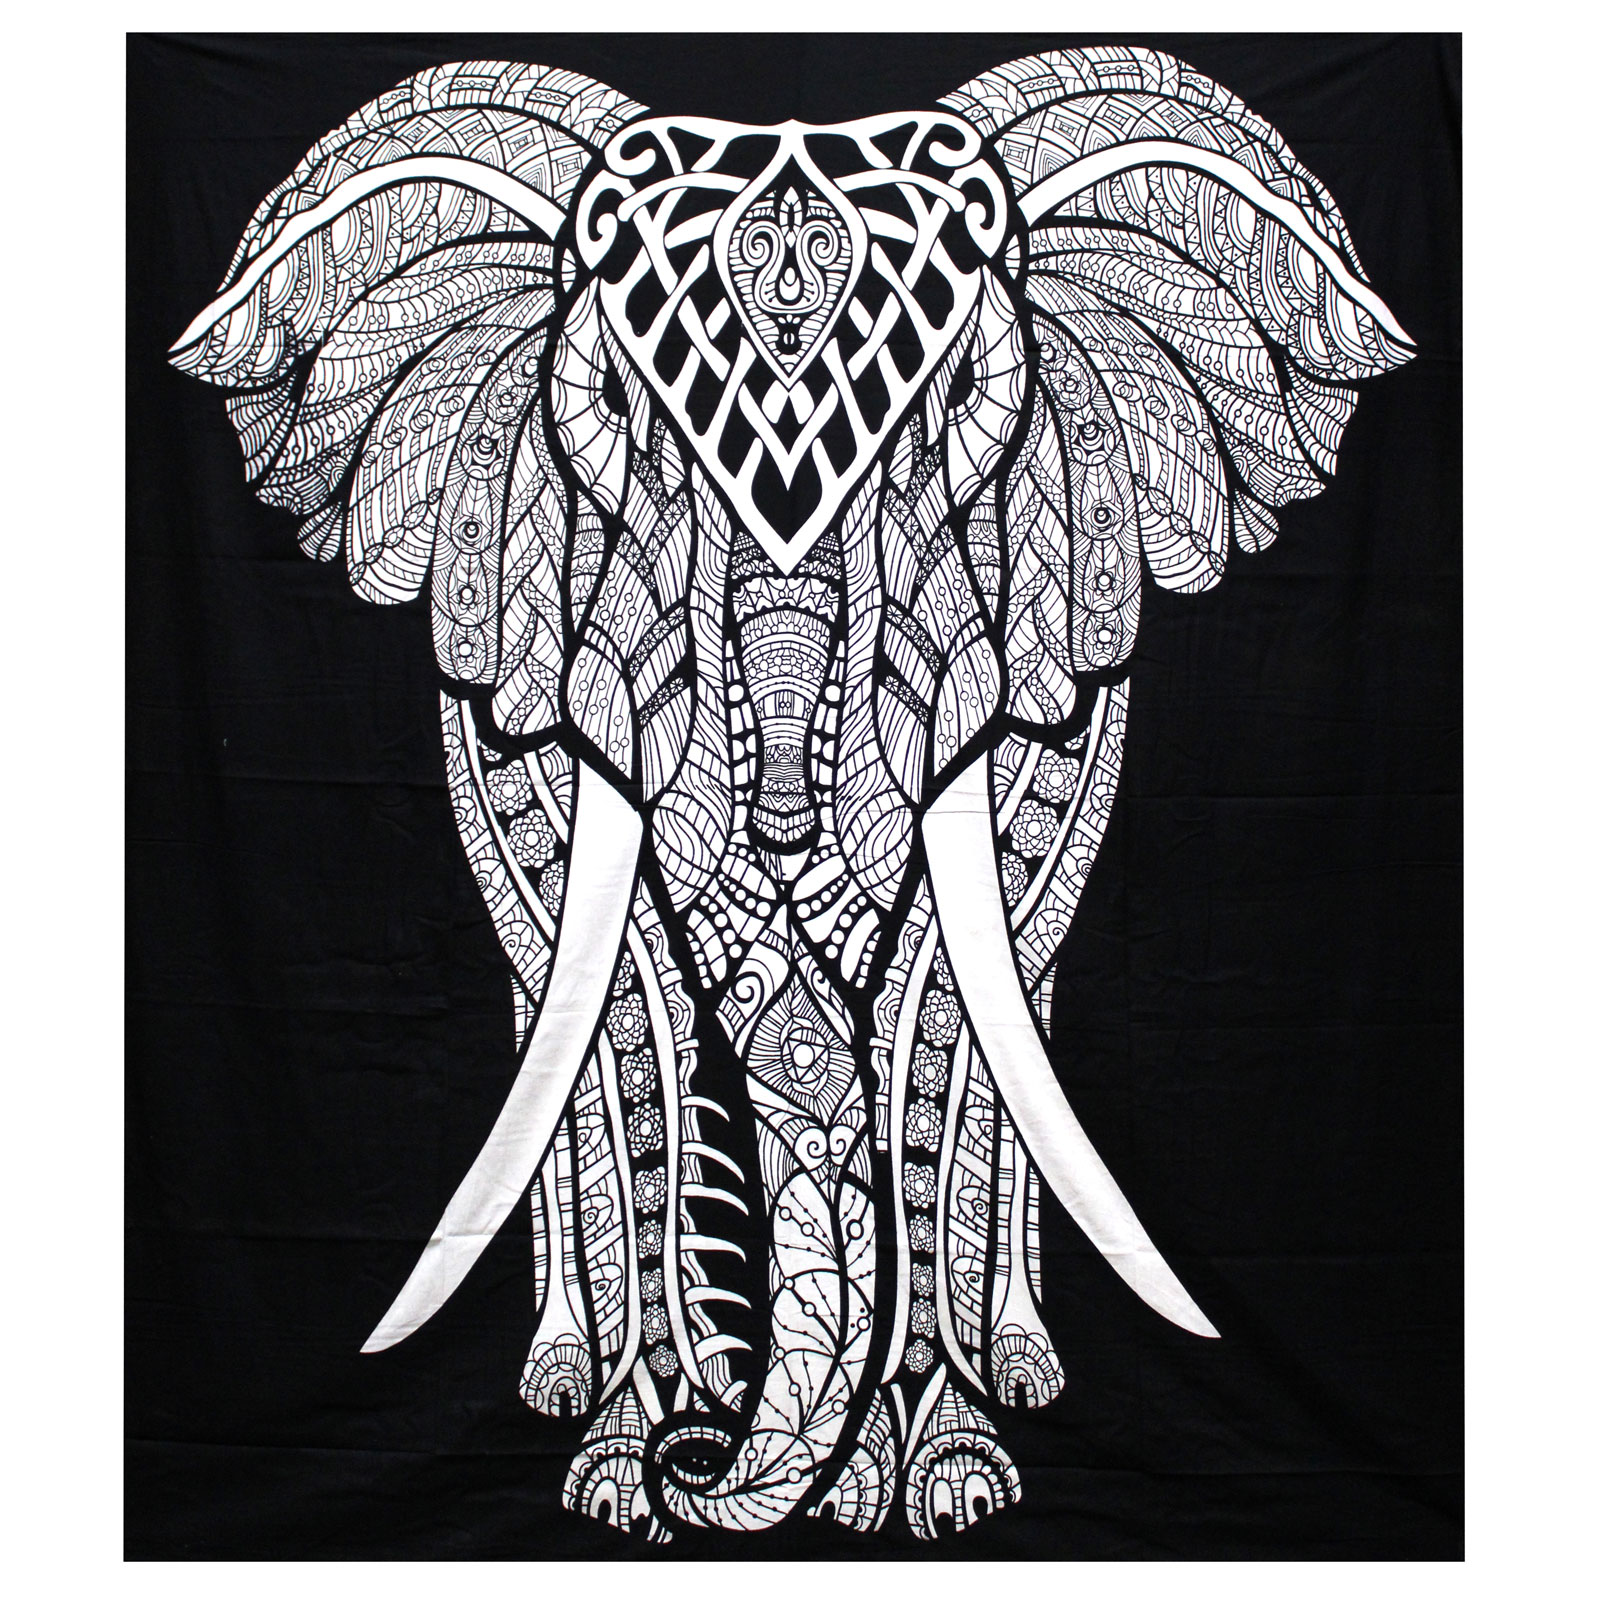 Ancient Wisdom Černobílý přehoz s motivem slona (dvojlůžko) - Ručně vyrobený v Indii